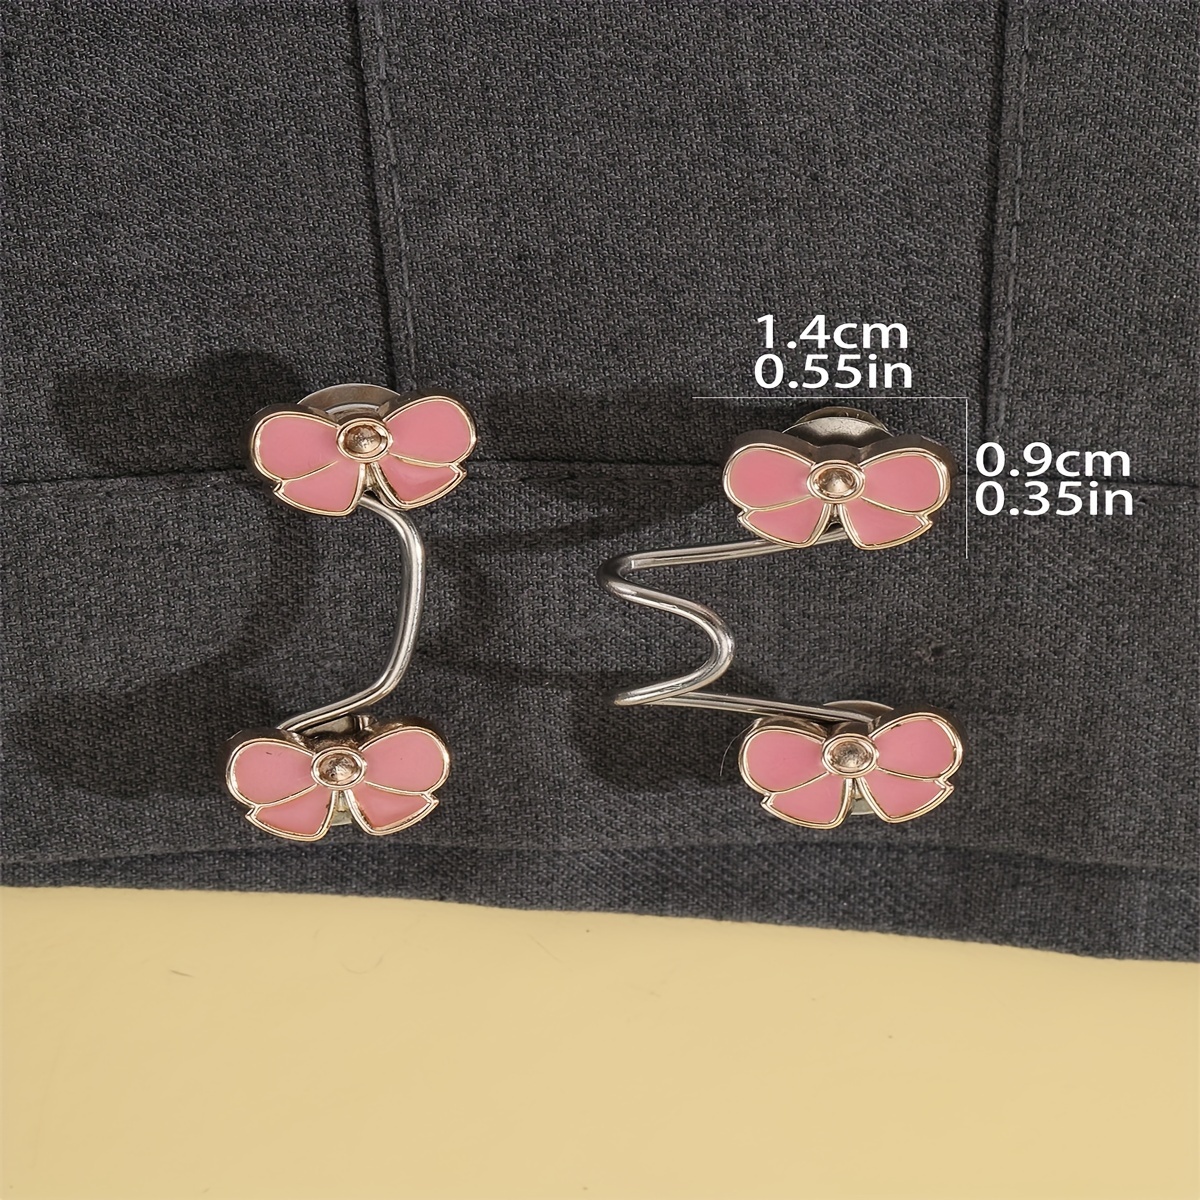 Waistband Butterfly Pants Button Tightener Waist Buckle Waist Accessories